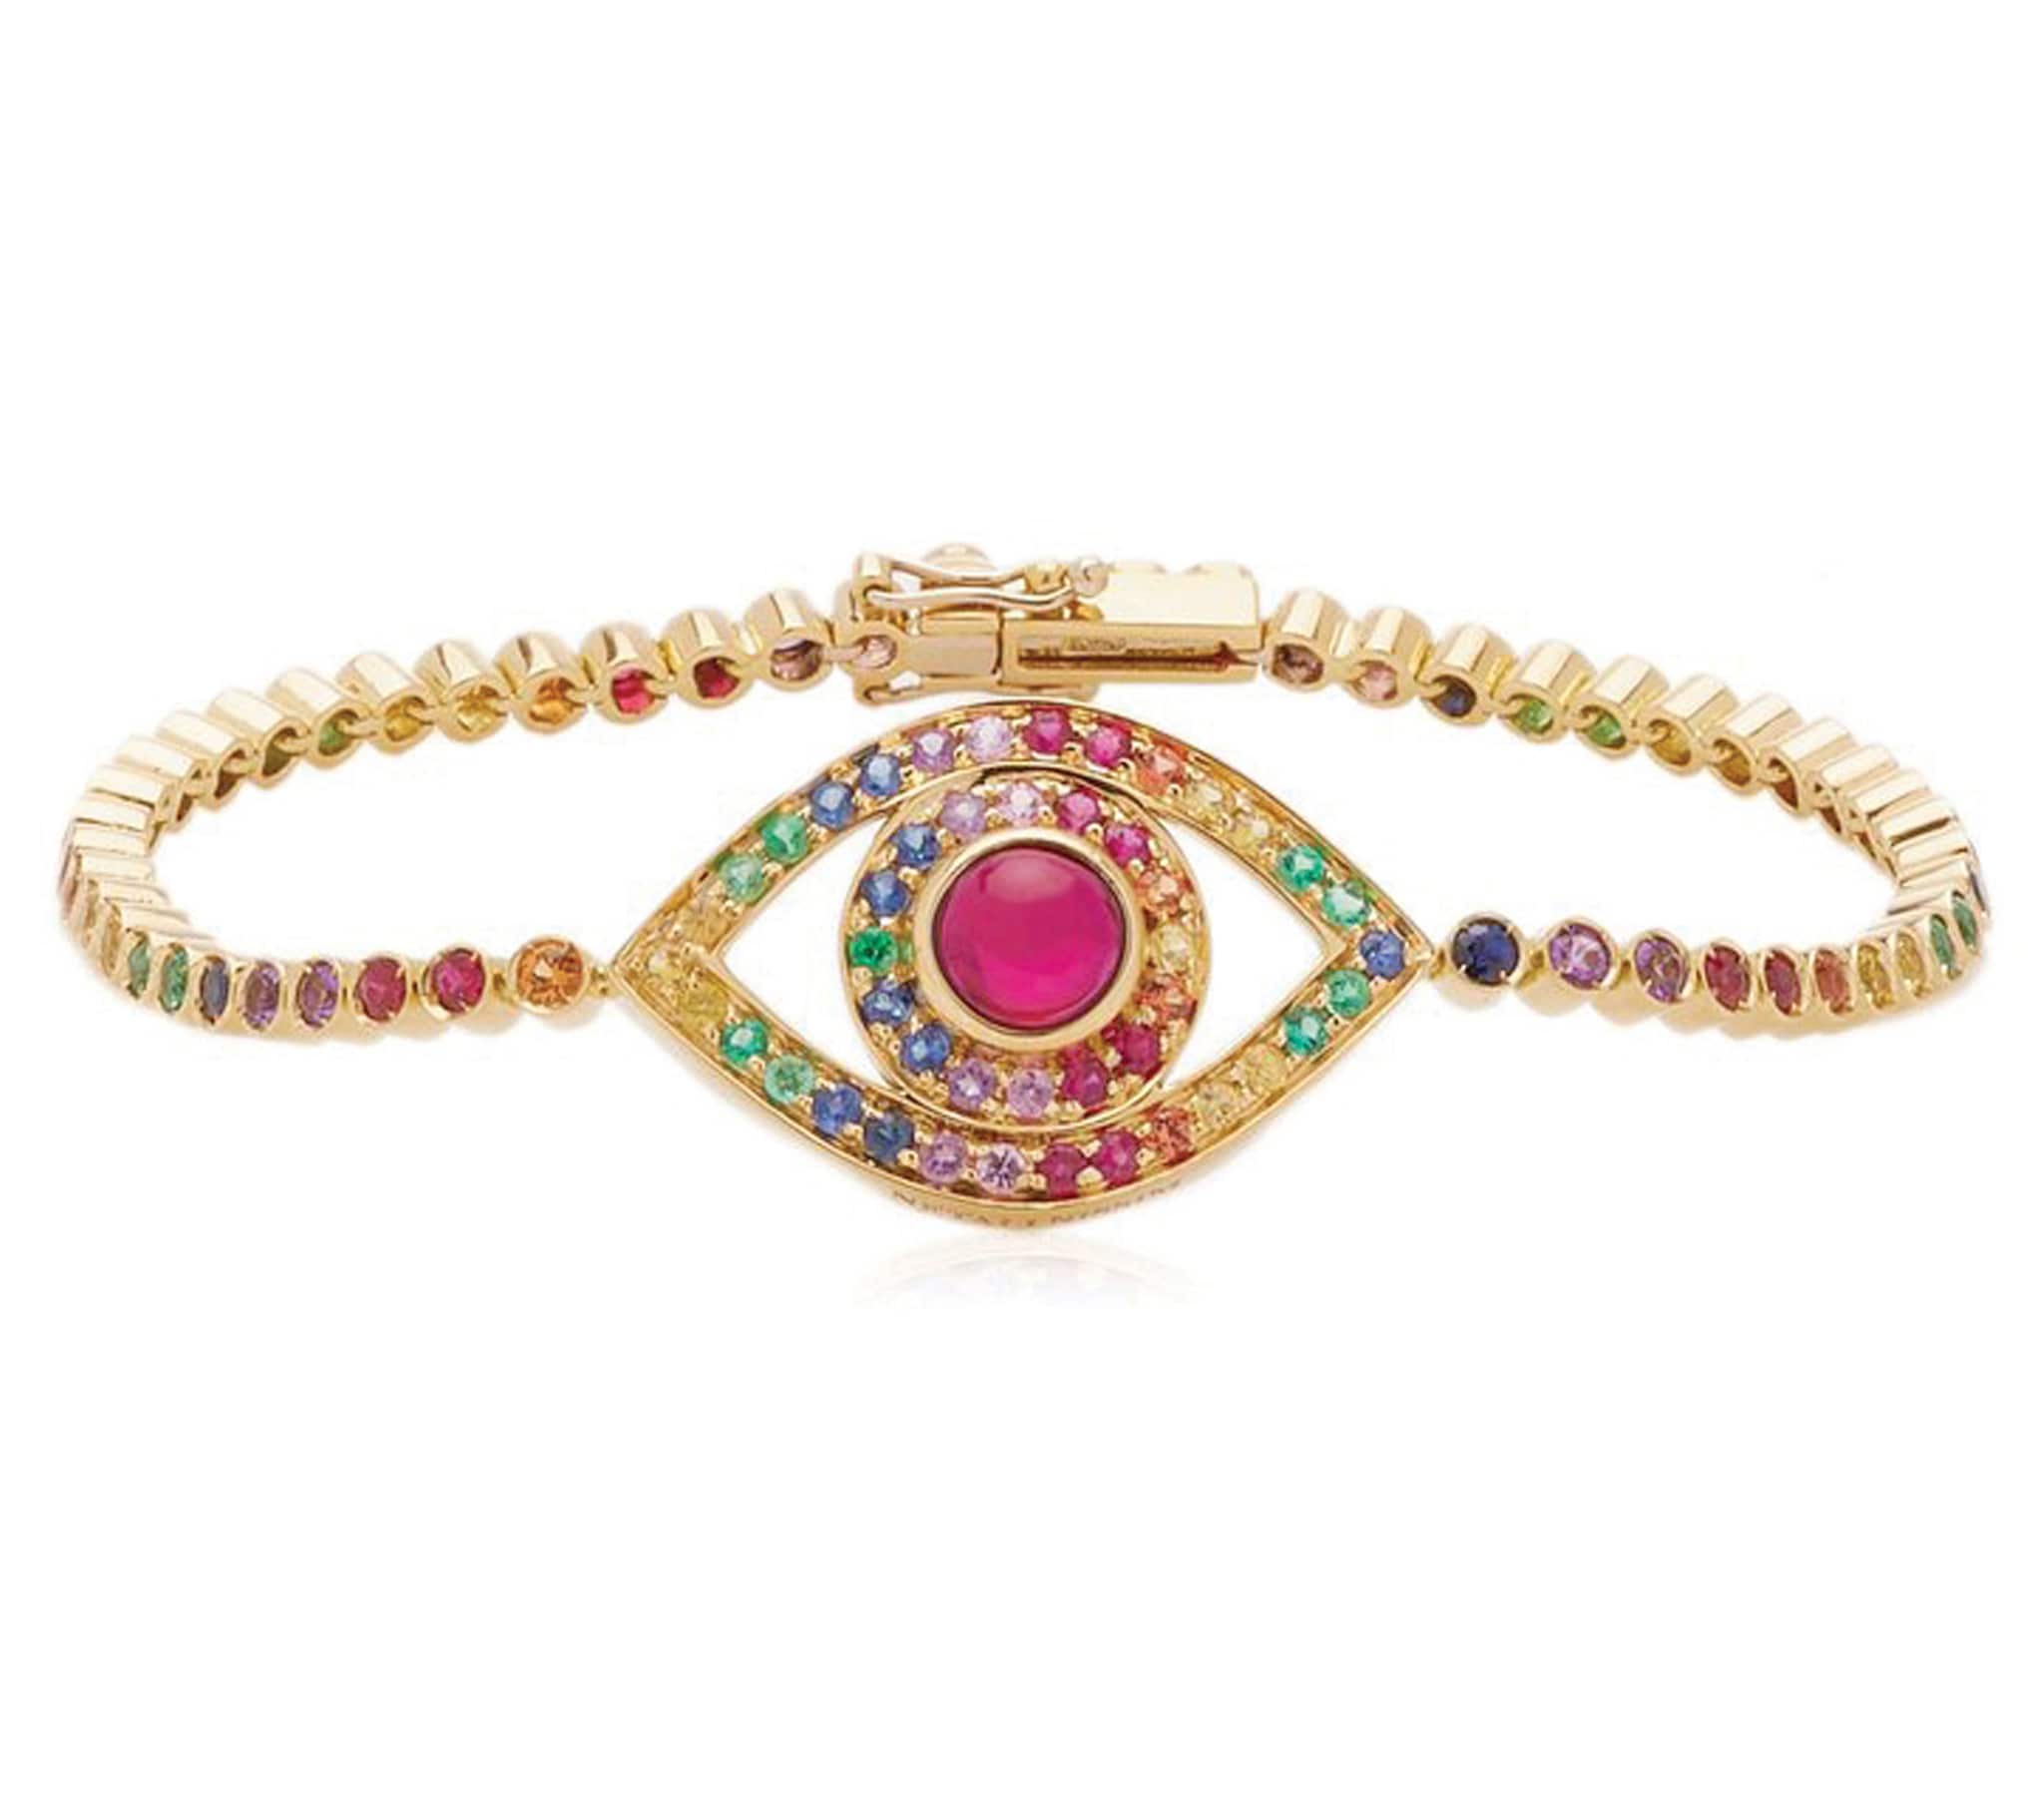 Netali Nissim. Bracciale Eye, interpretazione glamour di un antico simbolo di protezione, in oro giallo con rubino cabochon e pietre multicolor.